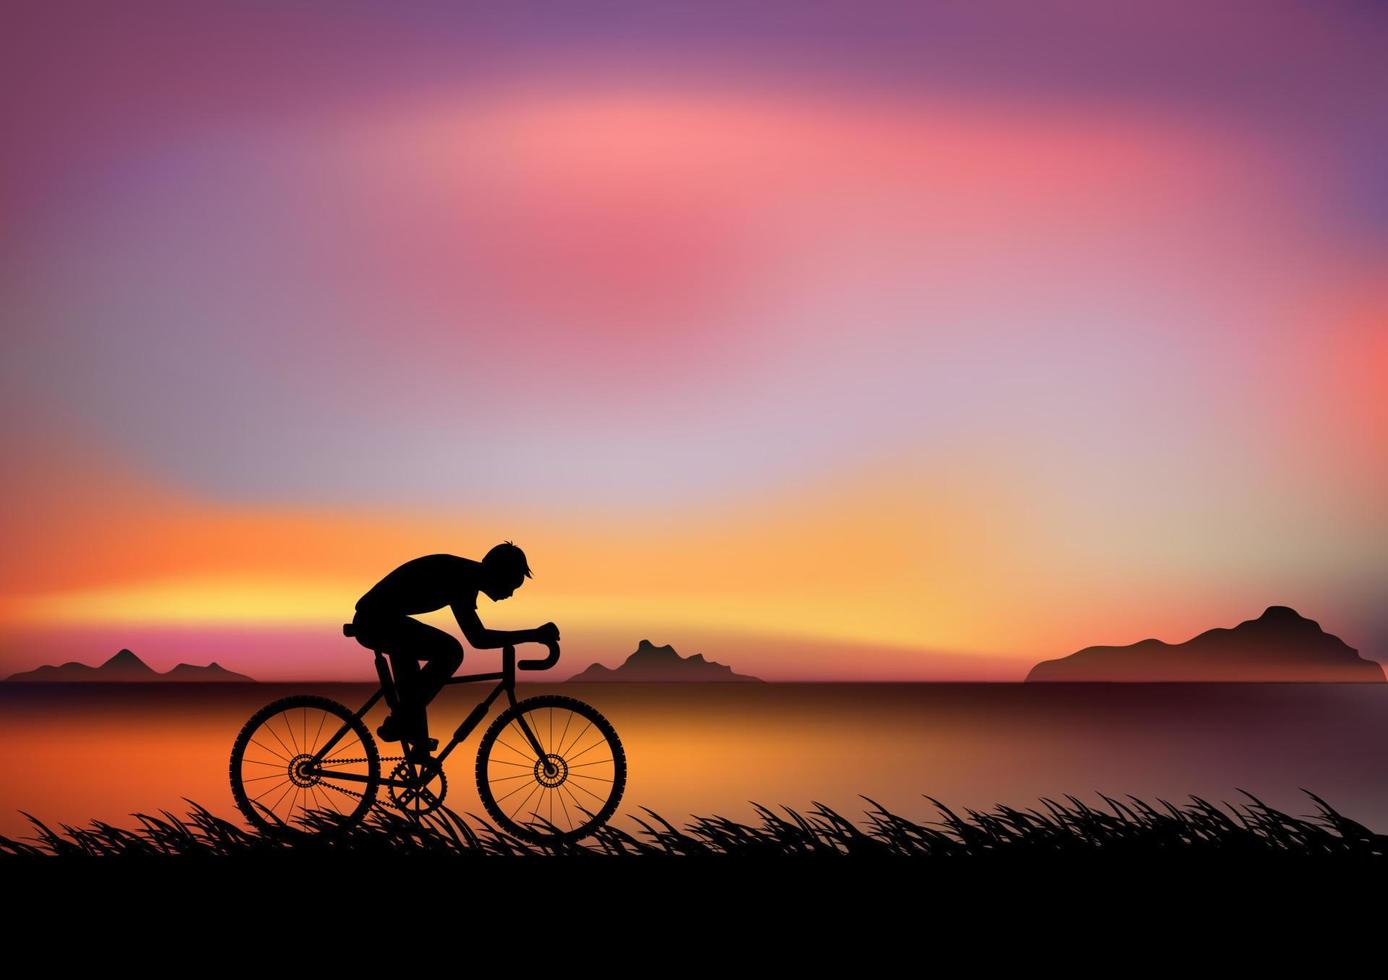 Xe đạp hoàng hôn: Hình ảnh xe đạp trên bầu trời hoàng hôn khiến bạn cảm thấy muốn đi du lịch và khám phá thế giới xung quanh. Bức ảnh còn cho thấy cảm giác tự do và niềm đam mê của những người yêu xe đạp.